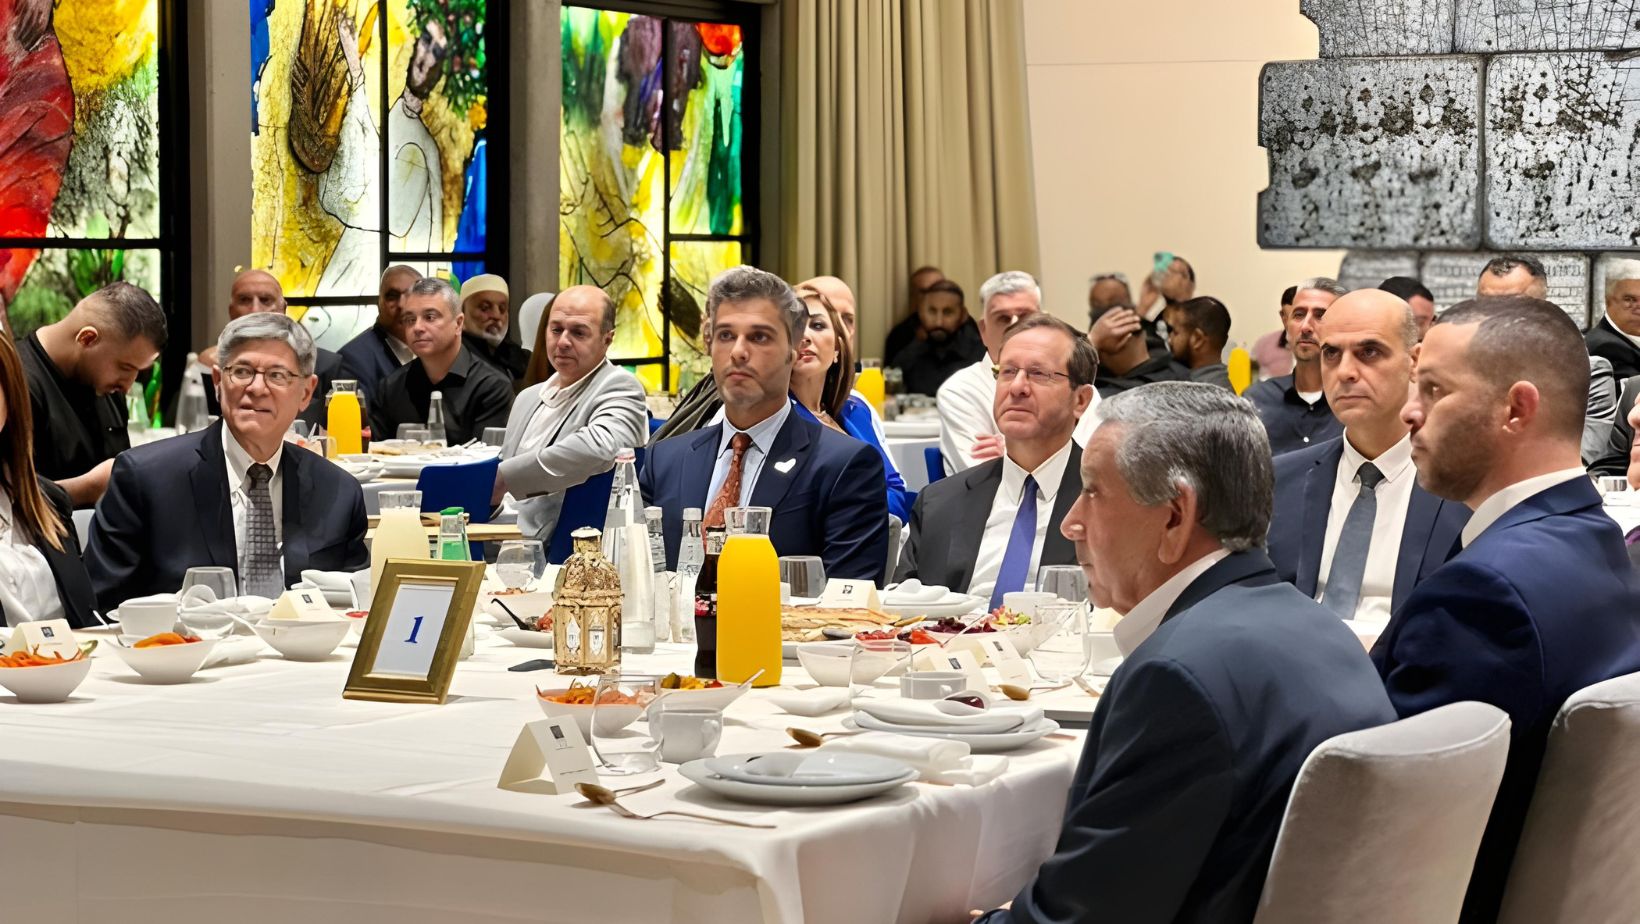 السفير الإماراتي يحضر إفطارًا رمضانيًا في مقر إقامة الرئيس الإسرائيلي